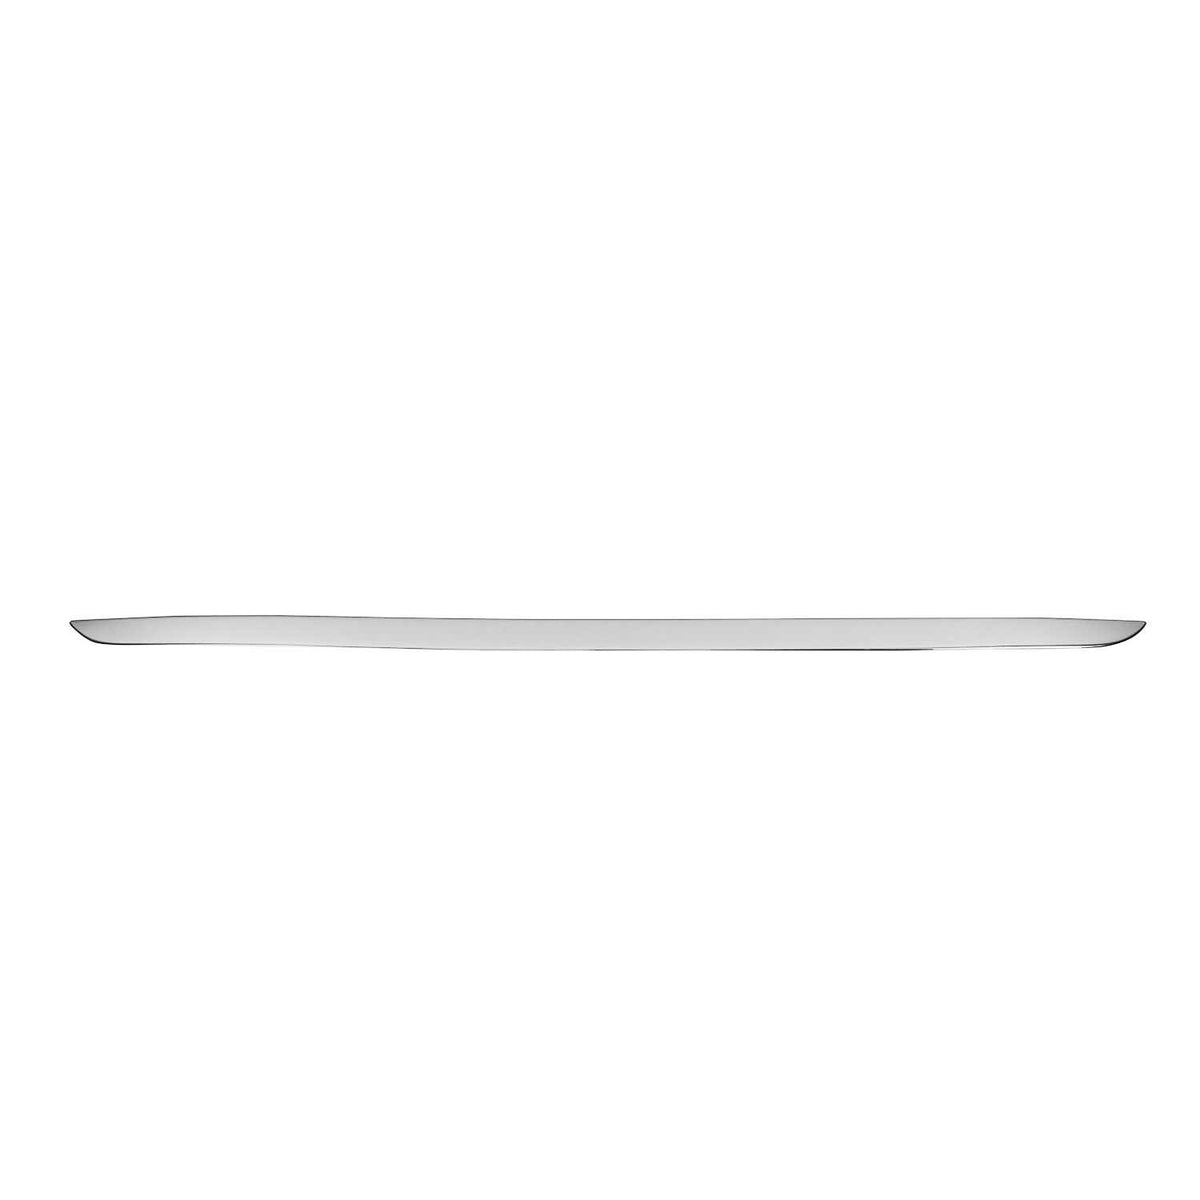 Trunk strip tailgate strip for Kia Sorento 2015-2020 stainless steel chrome